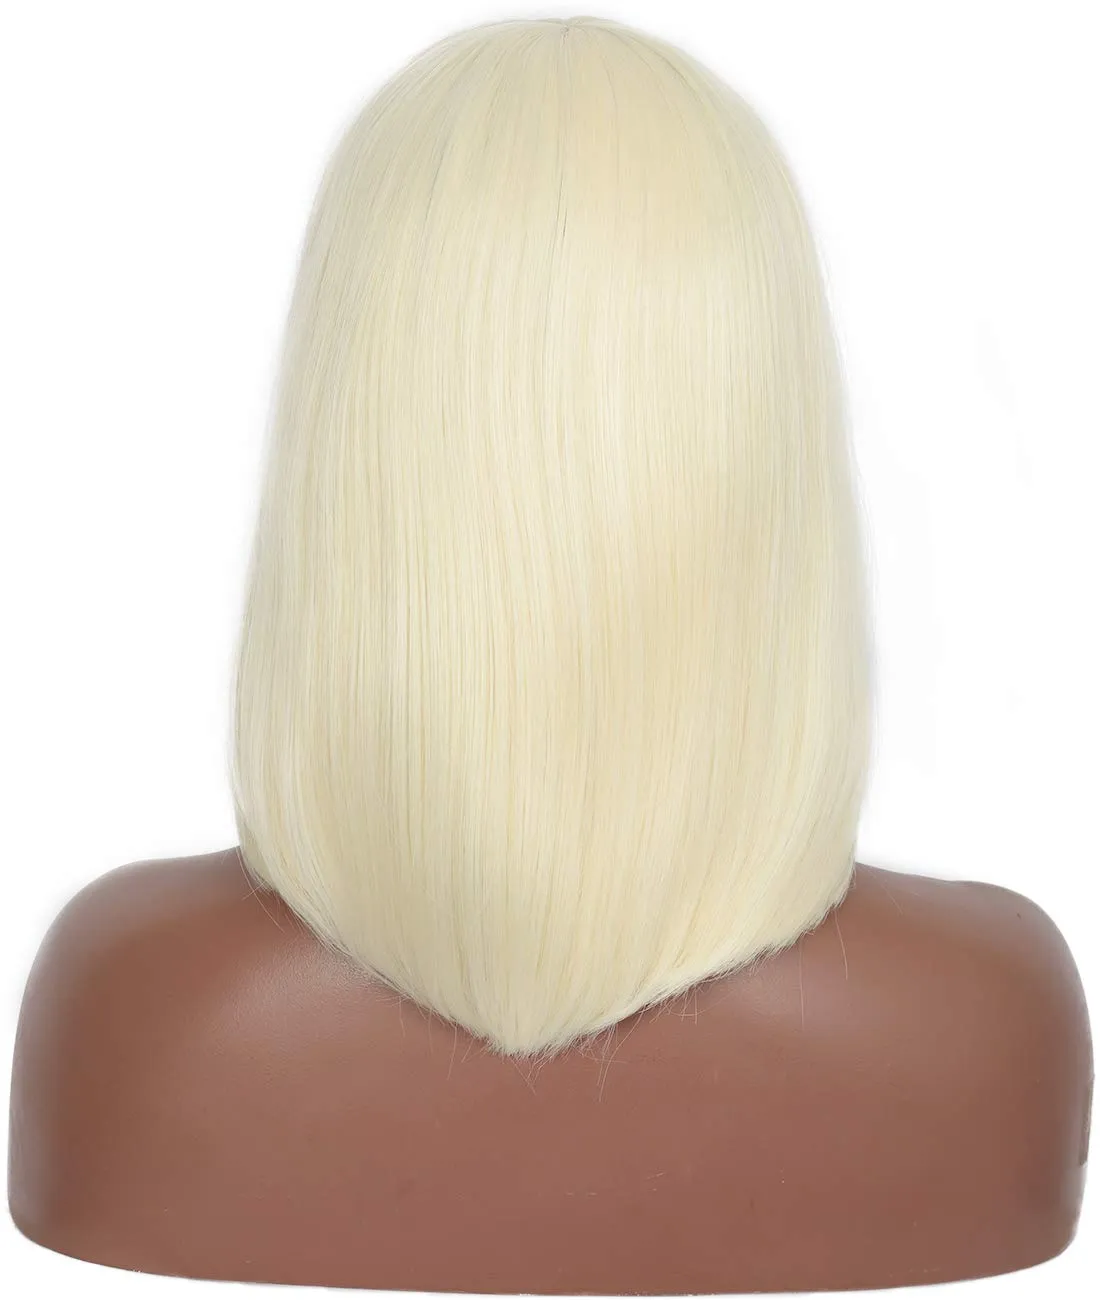 Короткий парик боб с челкой прямой блондин синтетические парики бразильский стиль парики для чернокожих женщин выглядят естественно